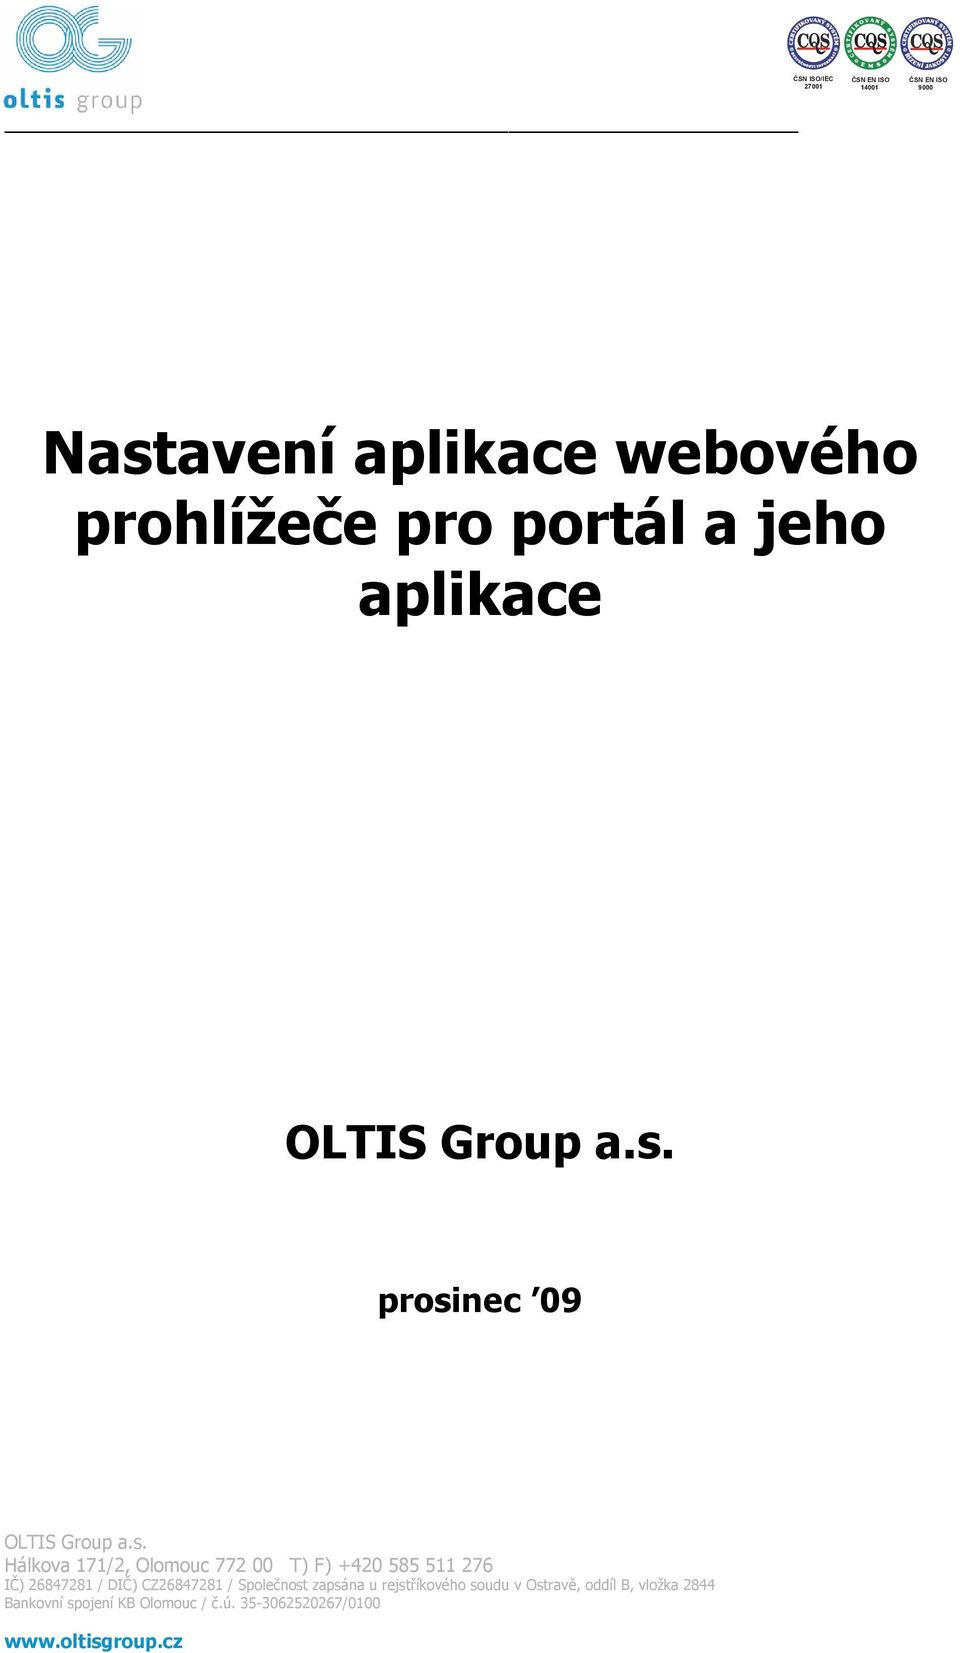 CZ26847281 / Společnost zapsána u rejstříkového soudu v Ostravě, oddíl B, vložka 2844